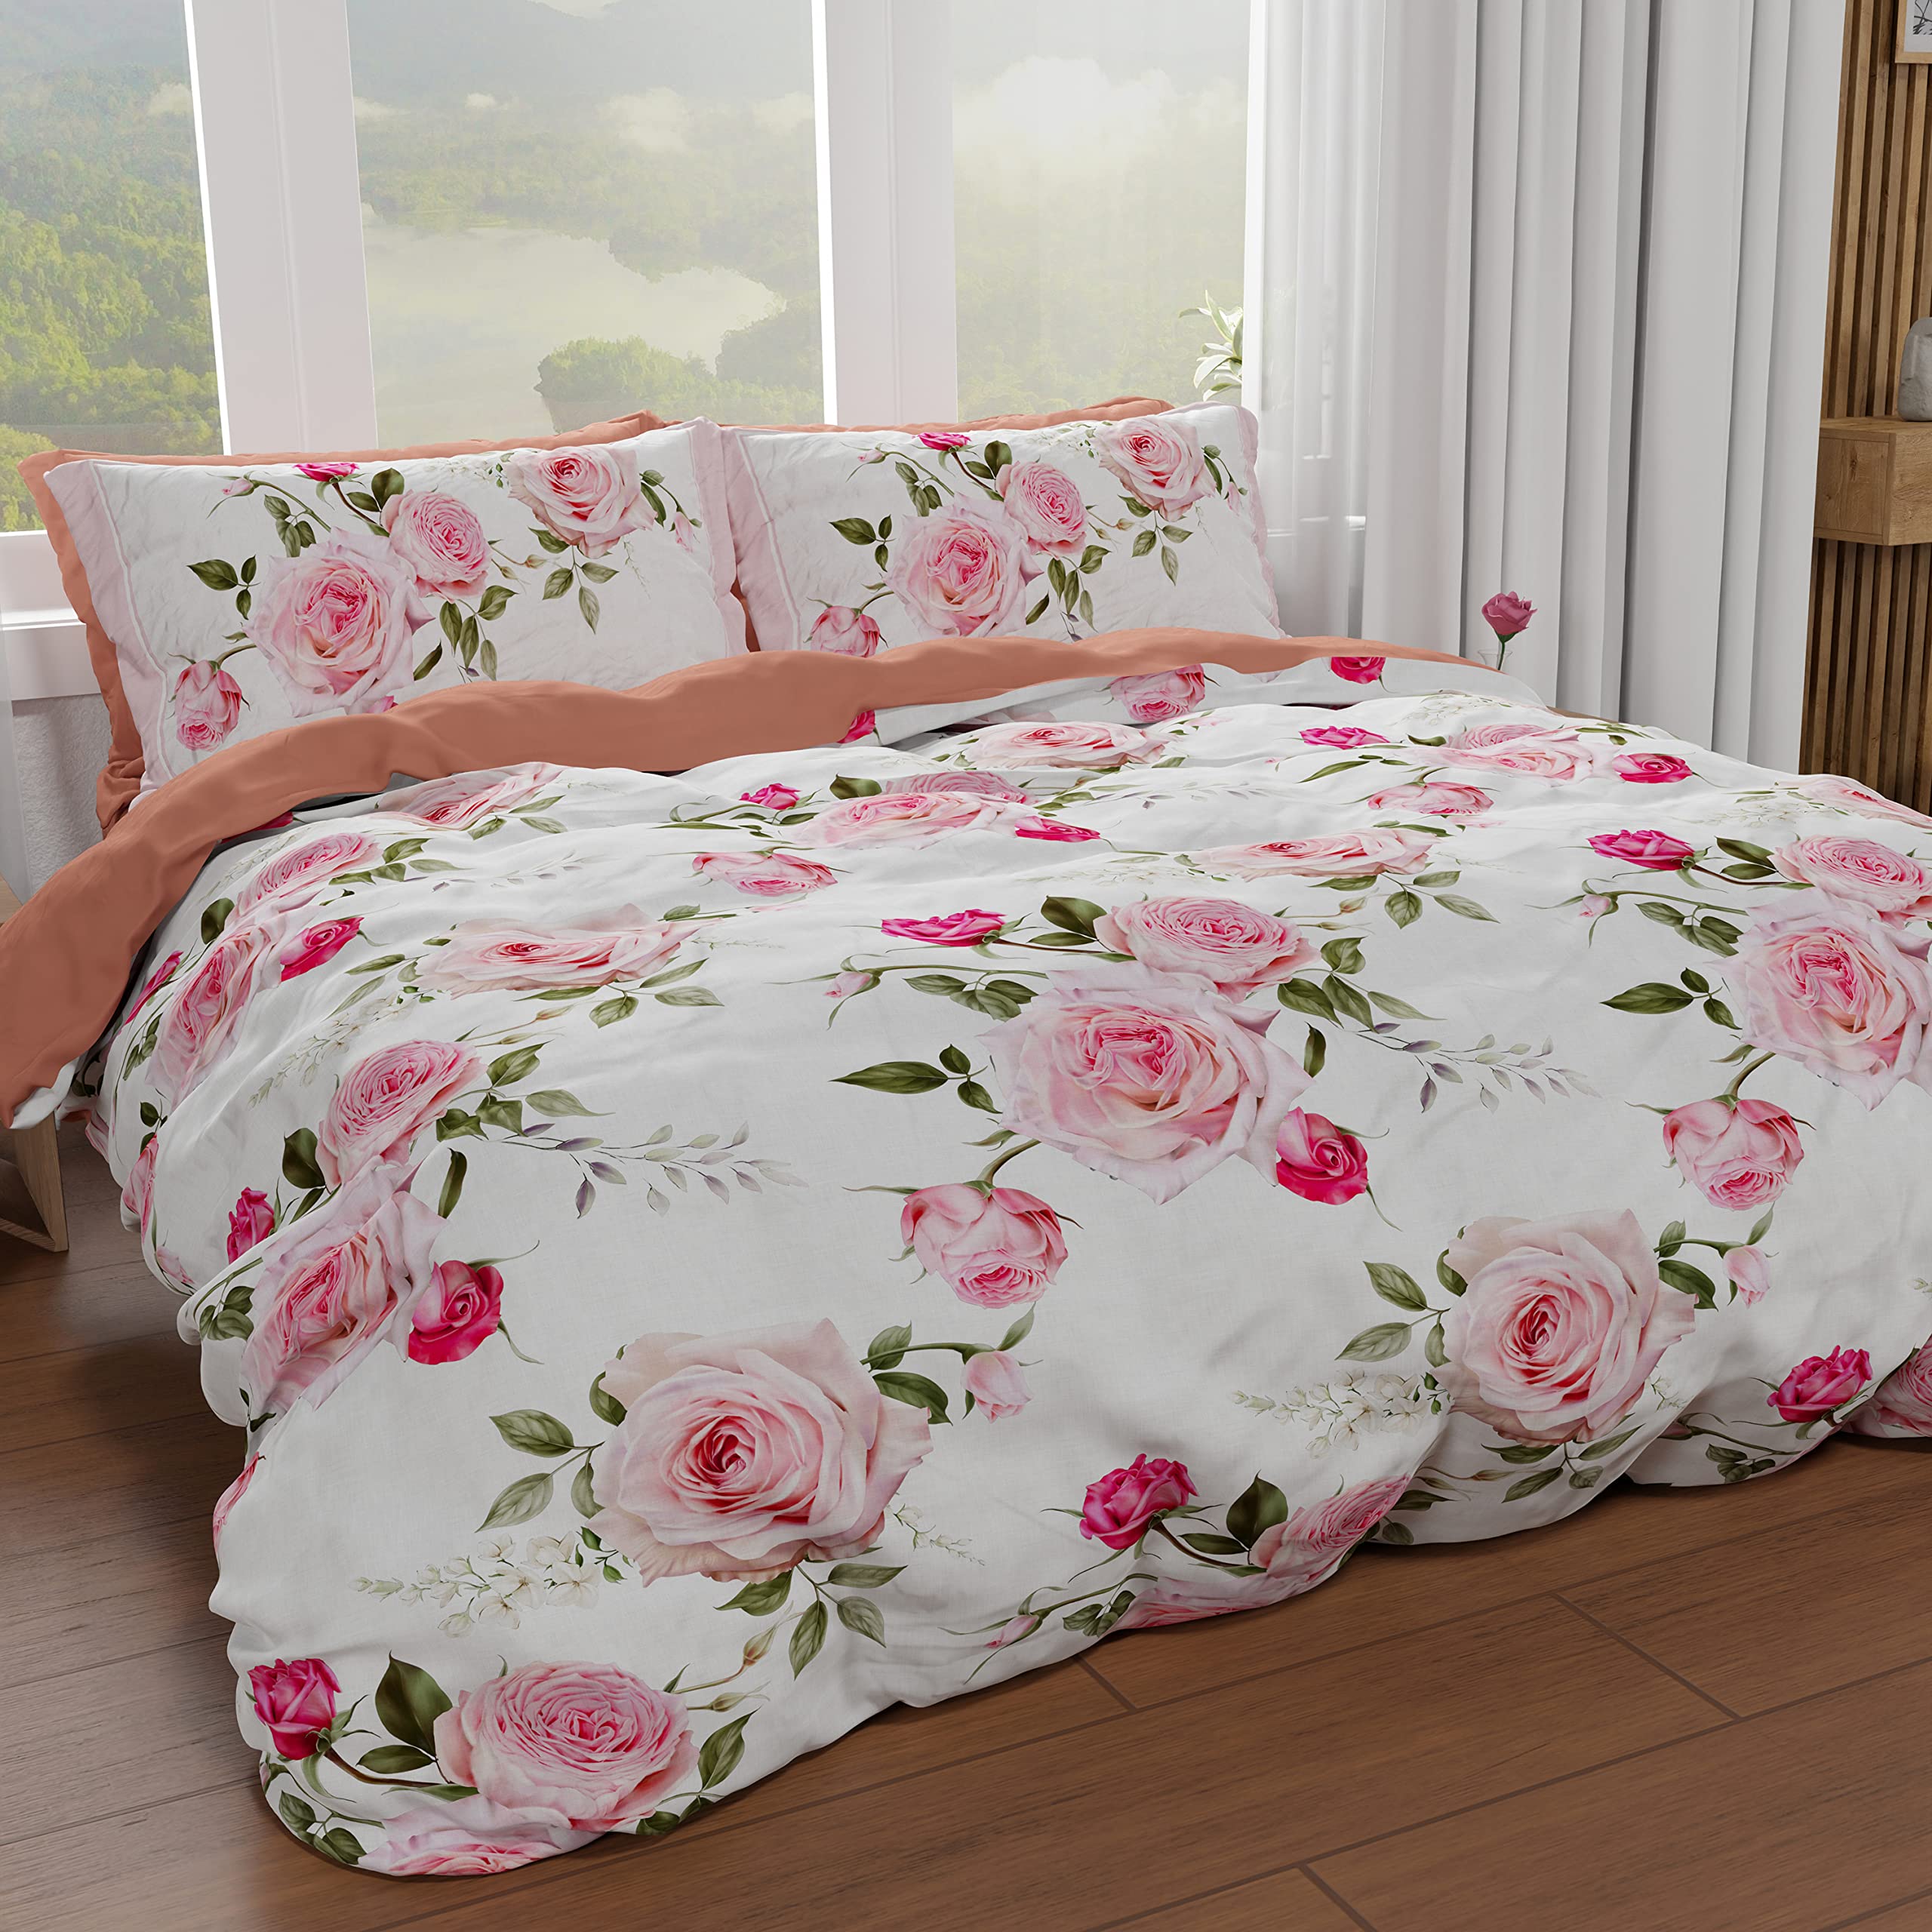 PETTI Artigiani Italiani - Bettbezug für Doppelbett, Bettbezug, Bettbezug und Kissenbezüge, Bettbezug, 100% Made in Italy, Floral